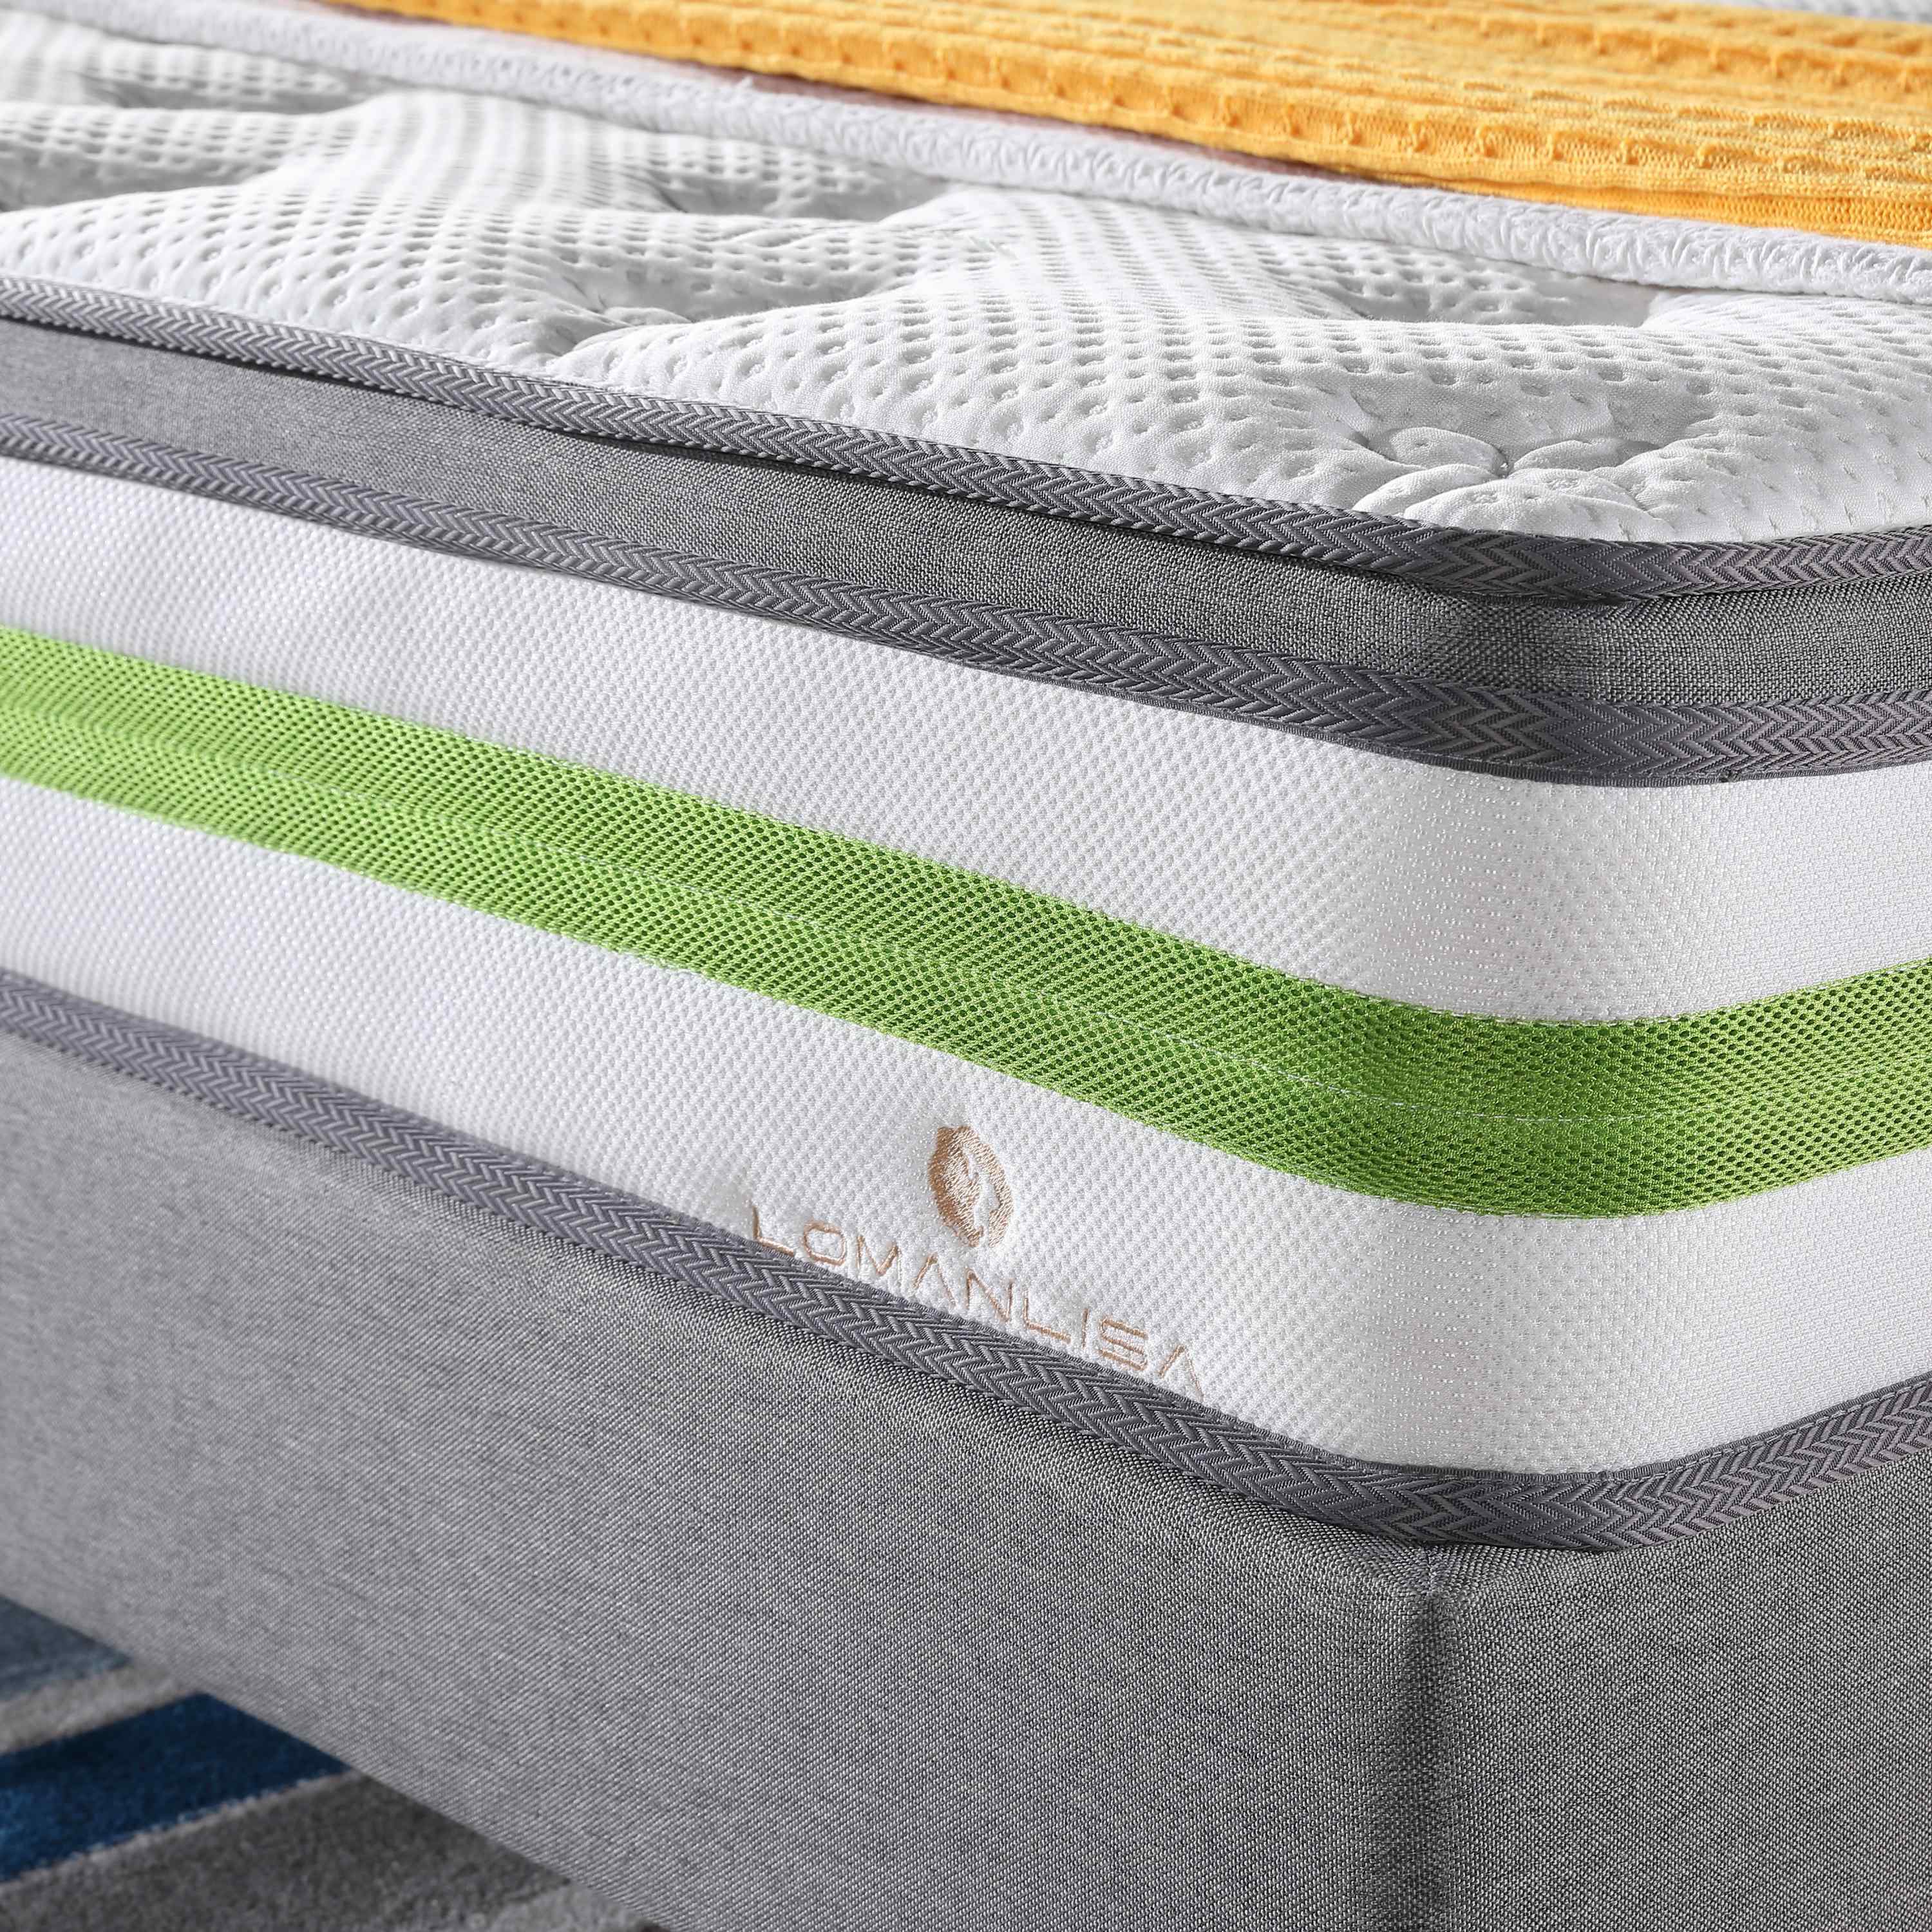 JLH-pocket spring mattress,floor mattress | JLH-1